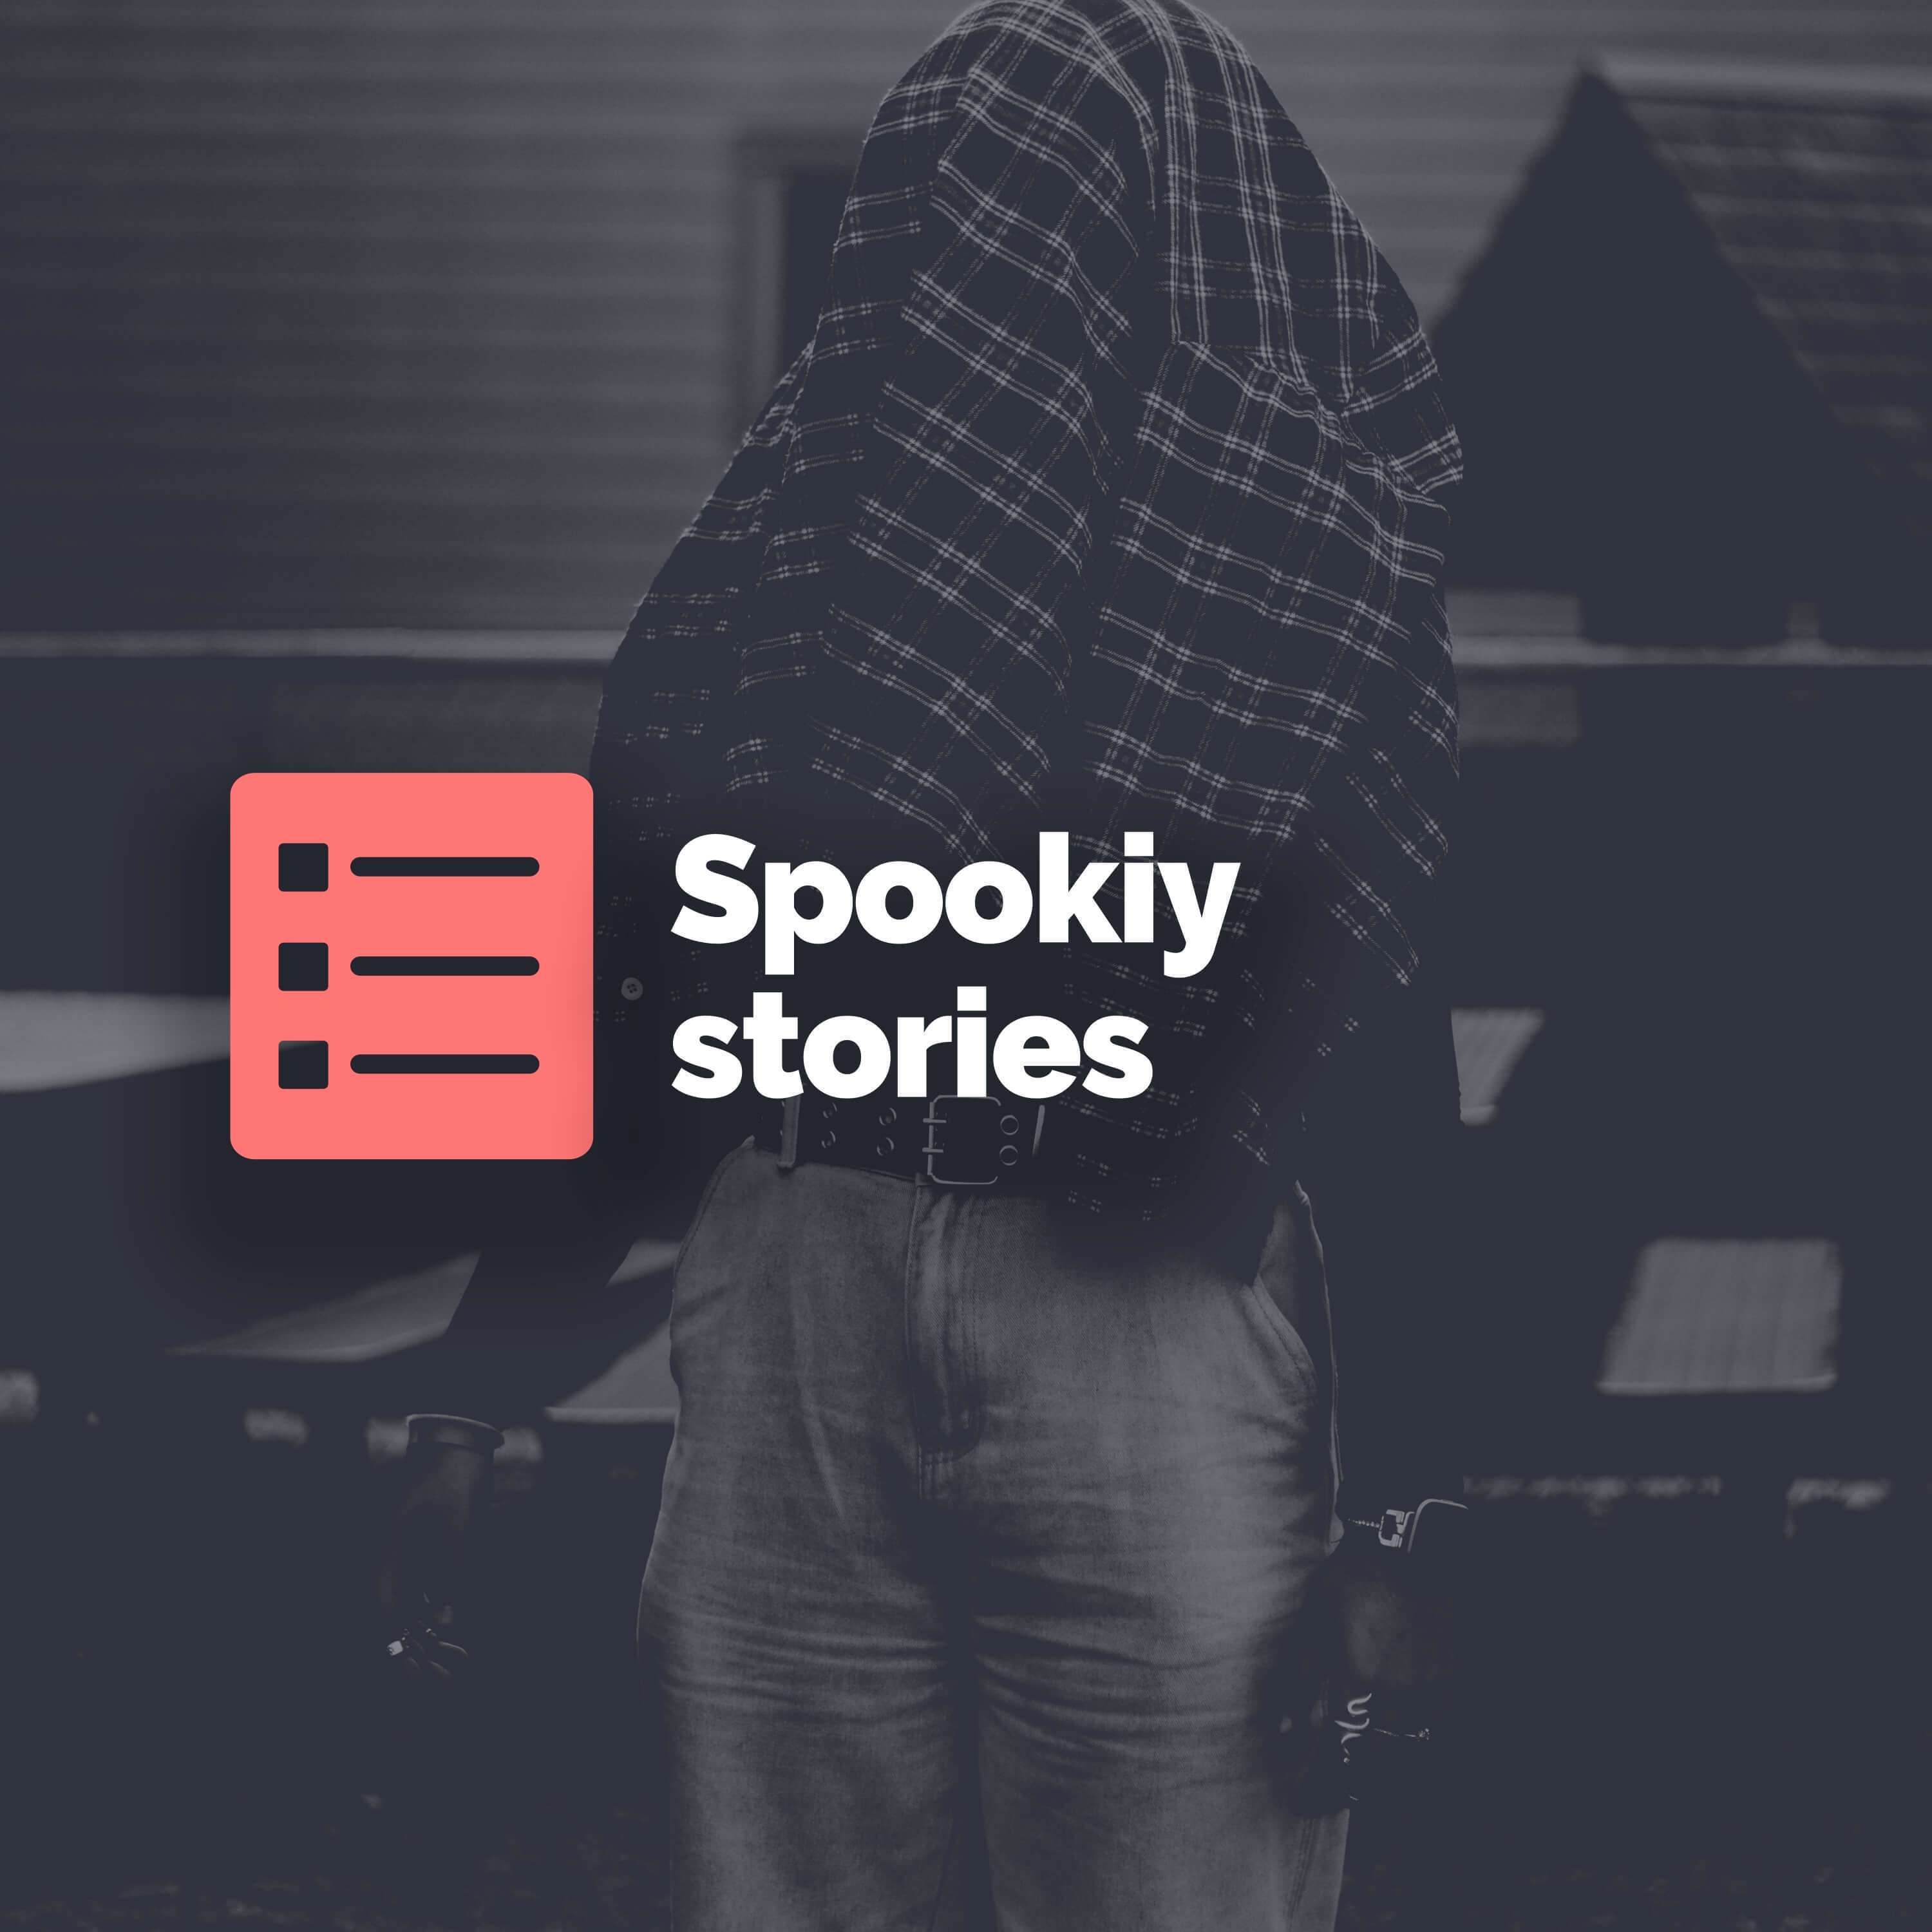 Spooky stories: Part 1